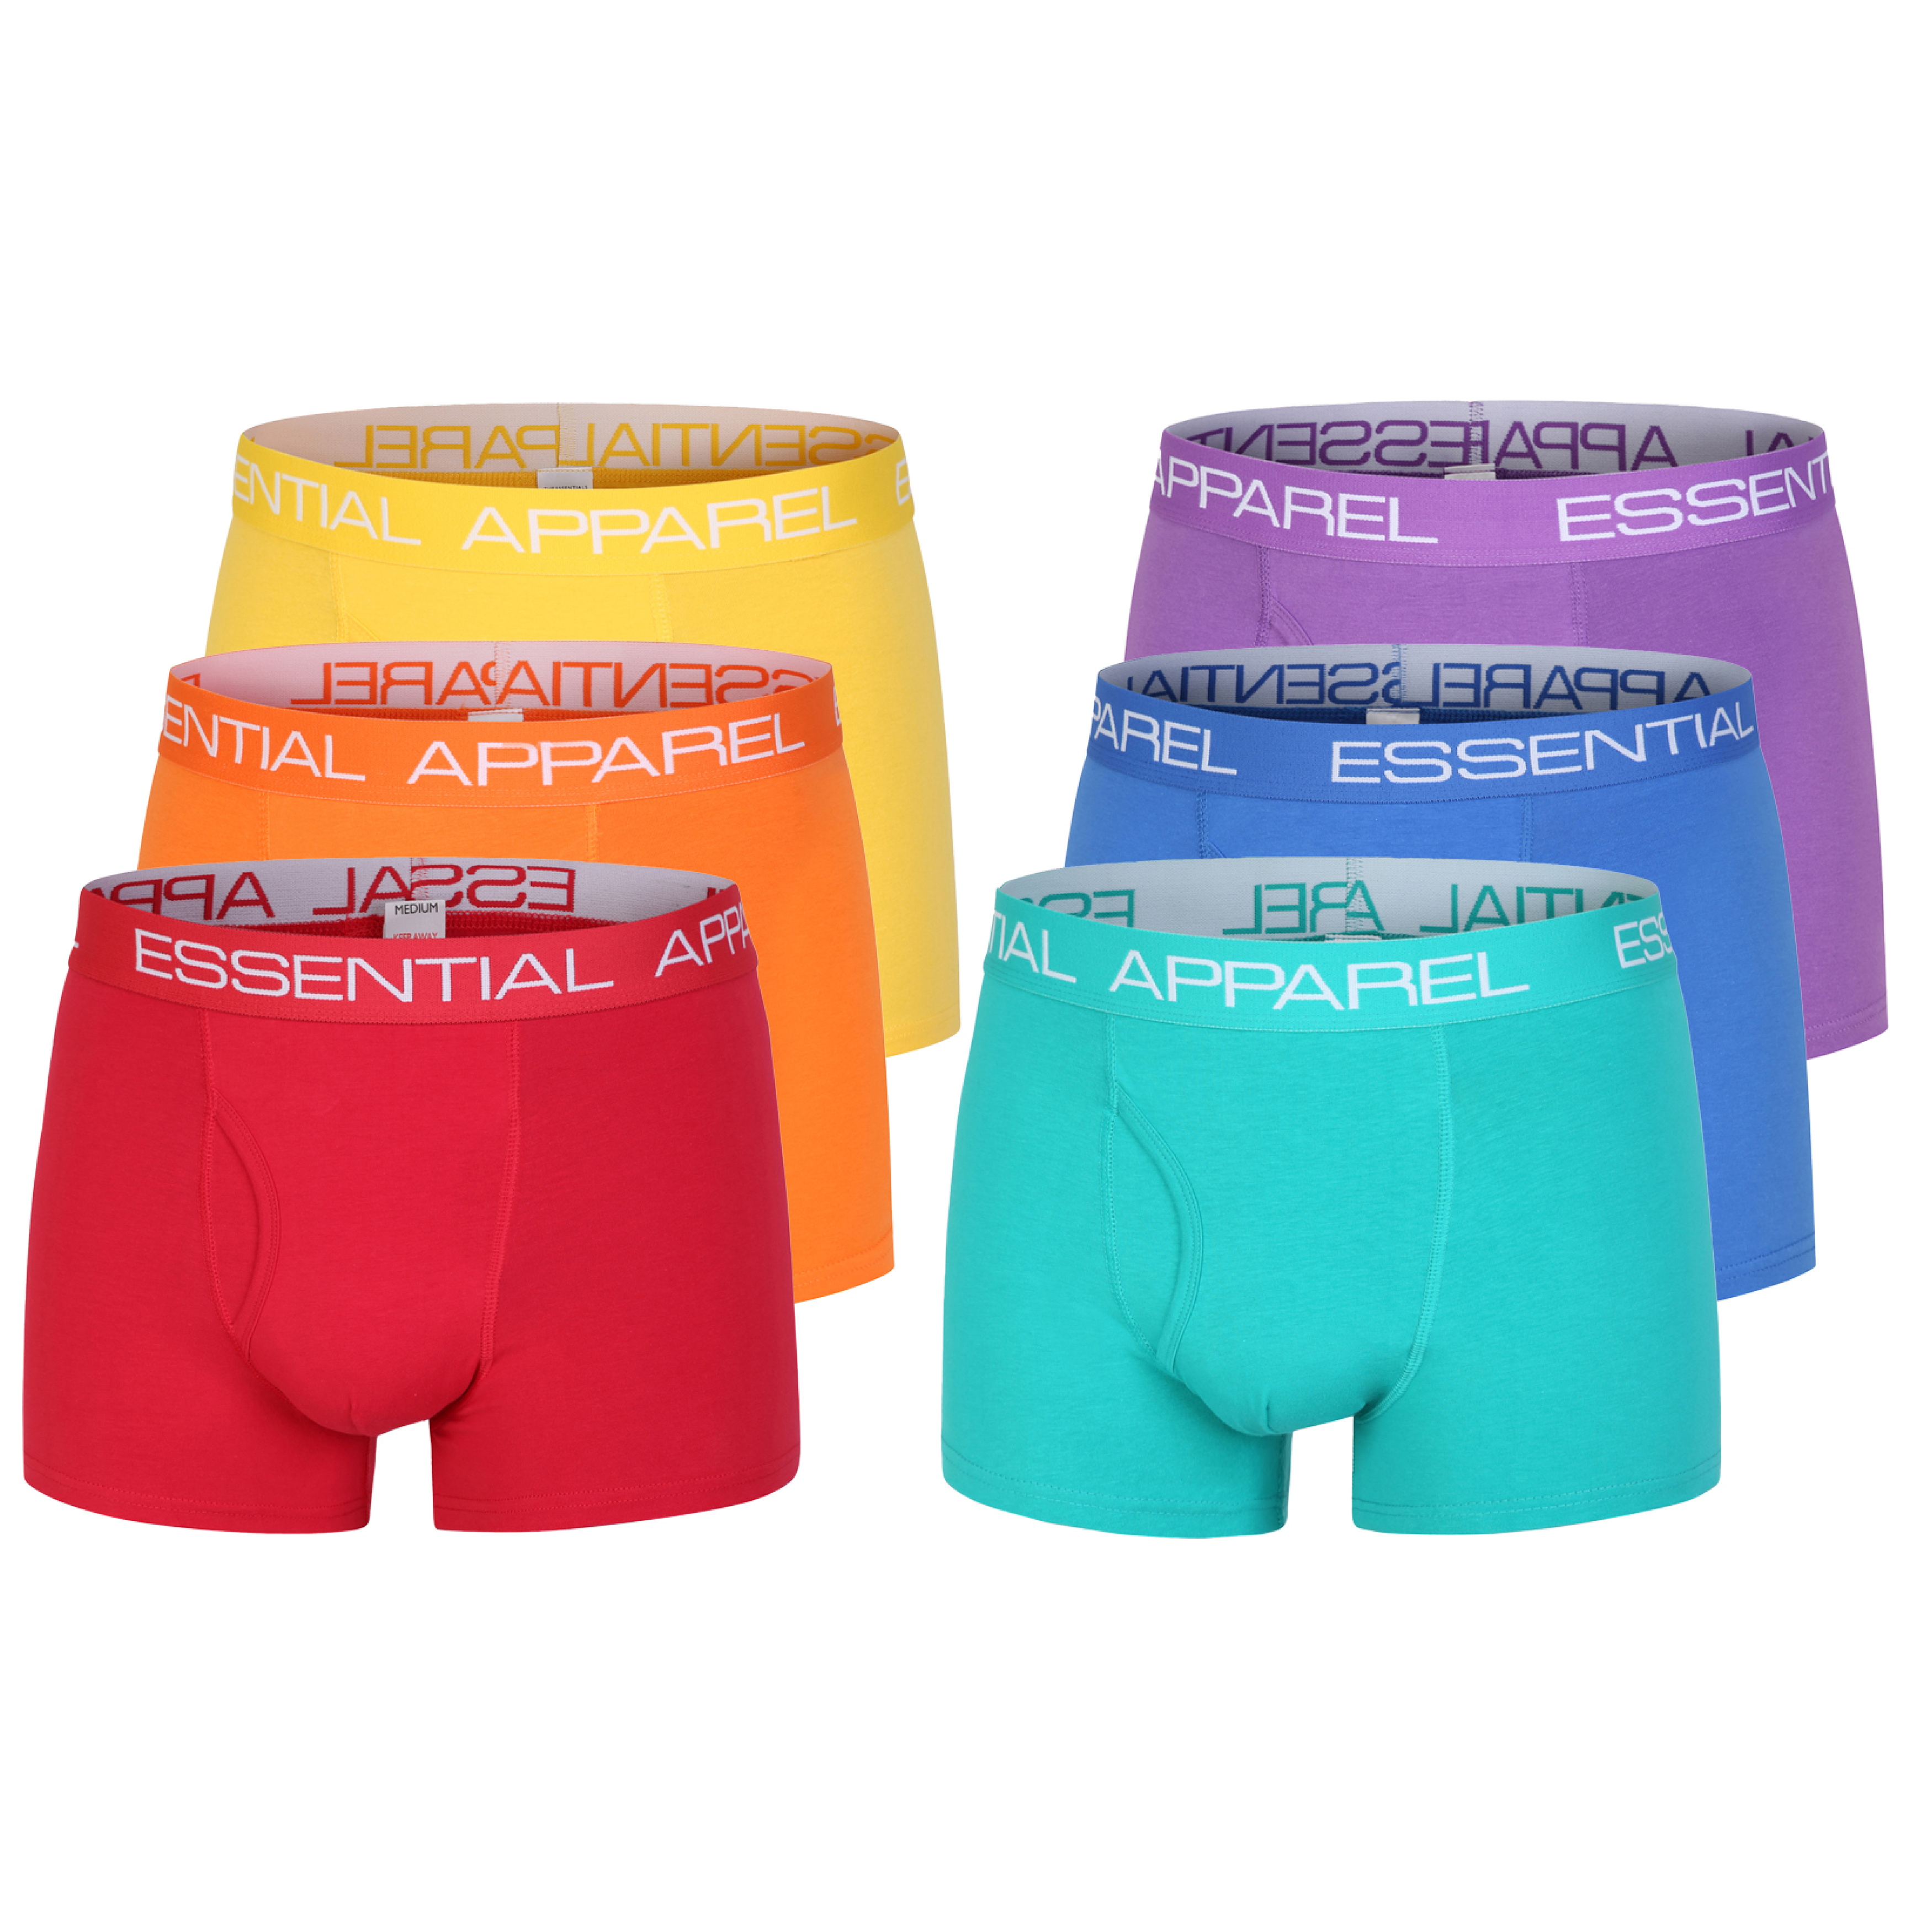 Men's Designer Neon Classic Sports Boxer Shorts Cotton Underwear Trunks Pants 